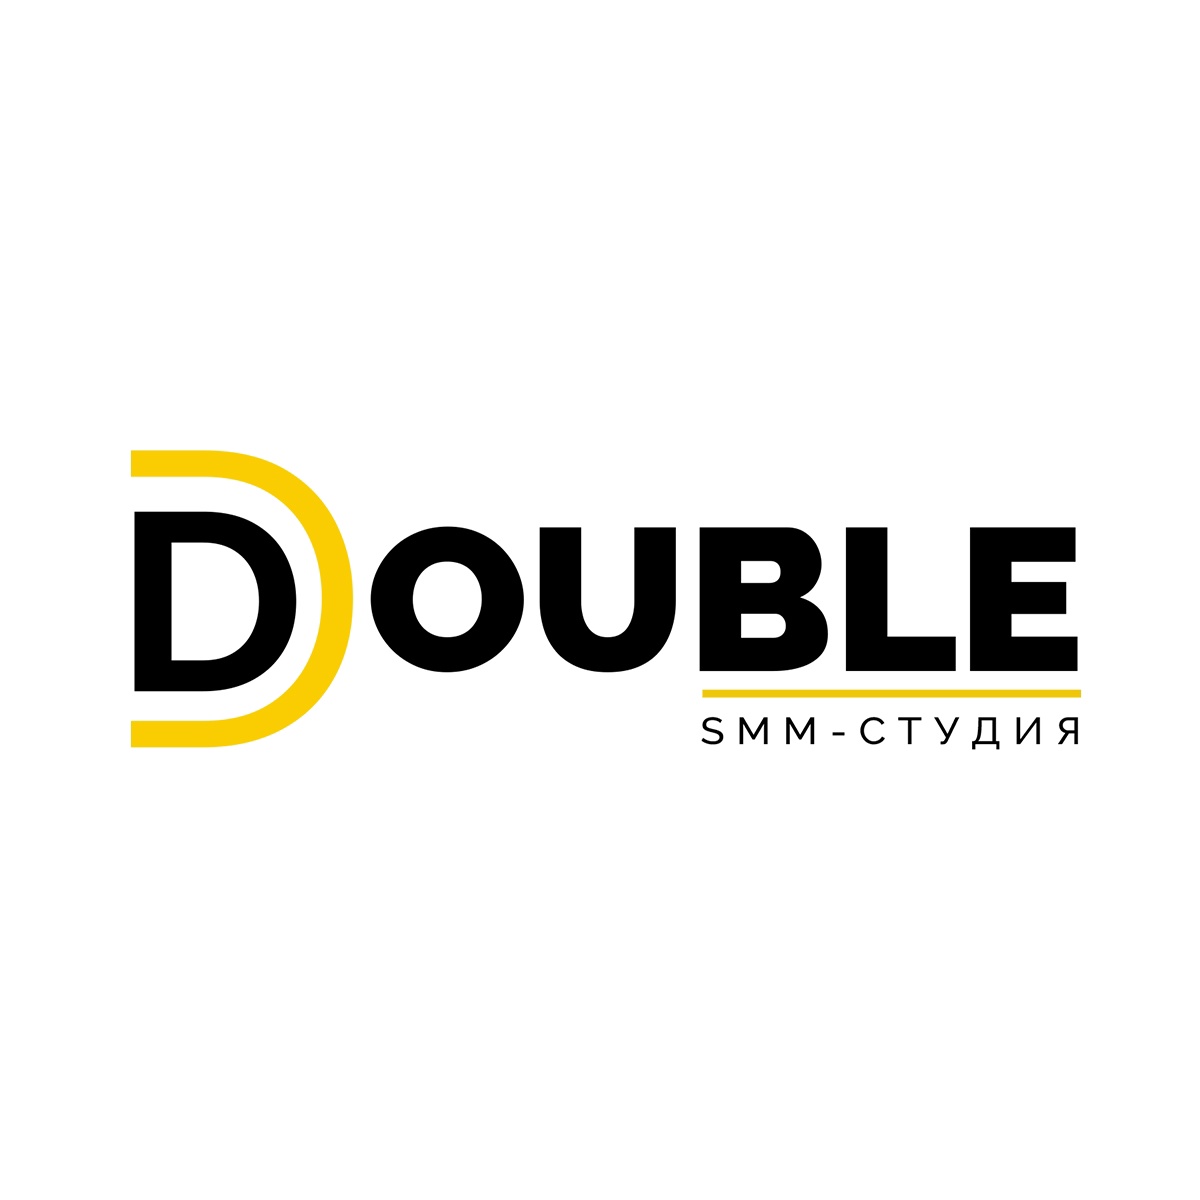 SMM студия Double